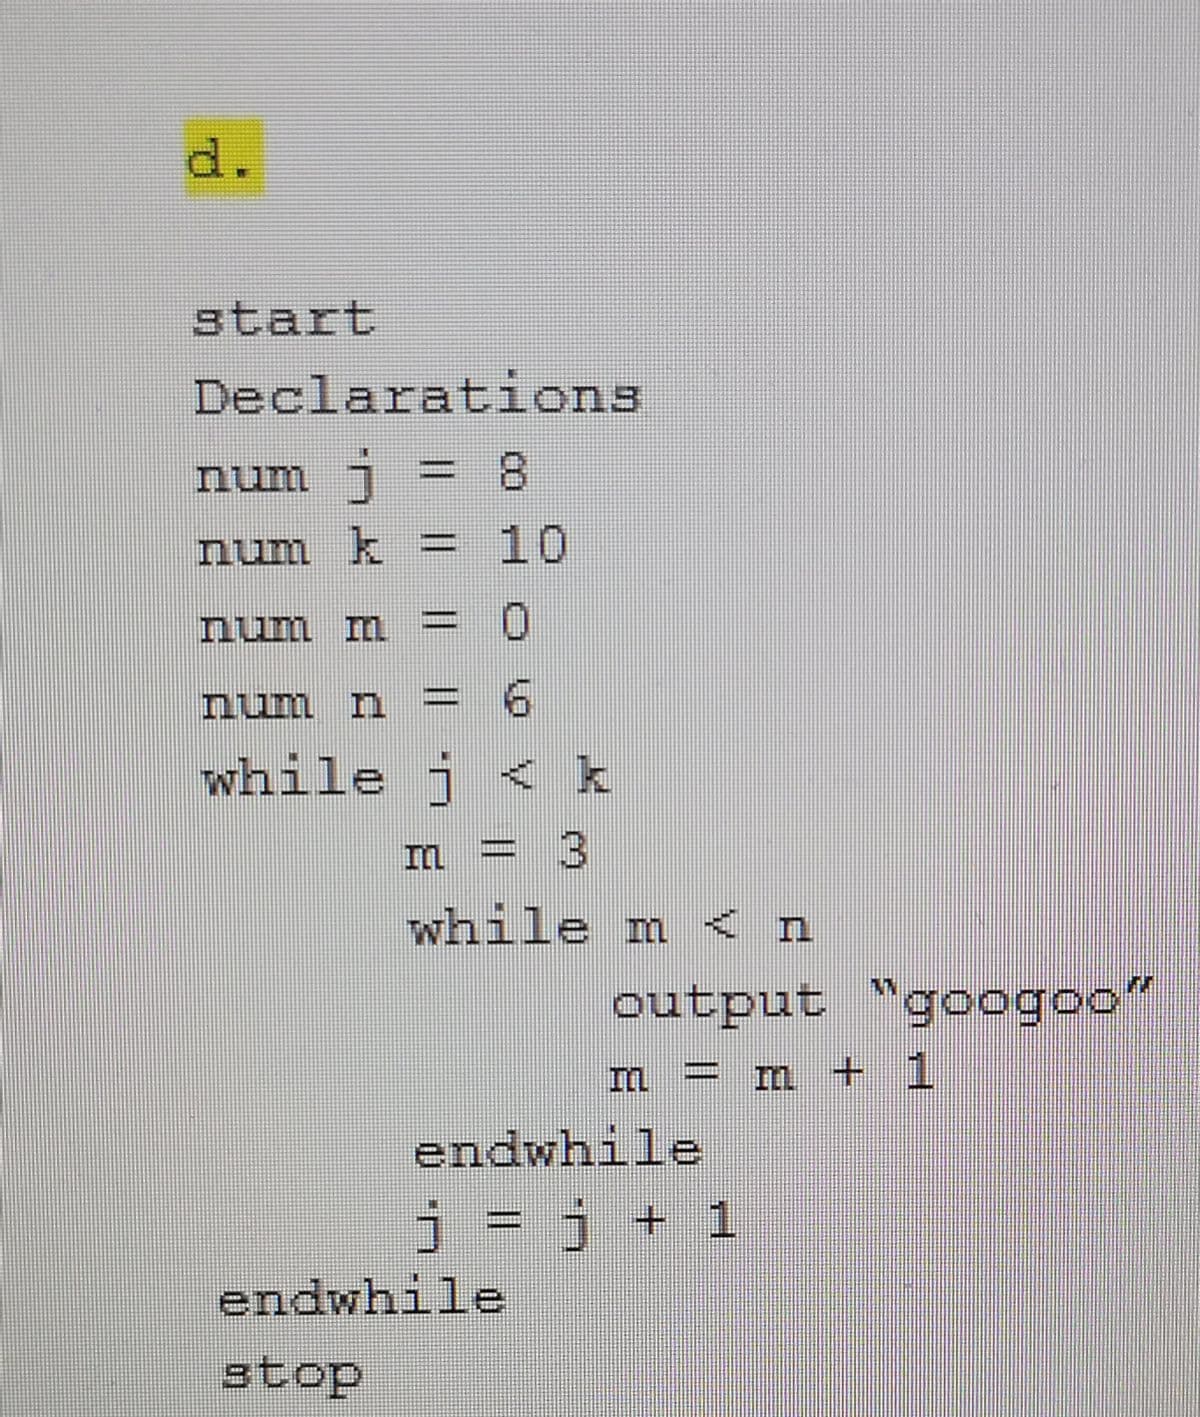 d.
start
Declarations
num j :
=D 8
%3D
num k =
10
num m = 0
nun n
while j < k
3
while m < n
output "googoo"
= m + 1
endwhile
j = j + 1
endwhile
stop
|3|
|3|
